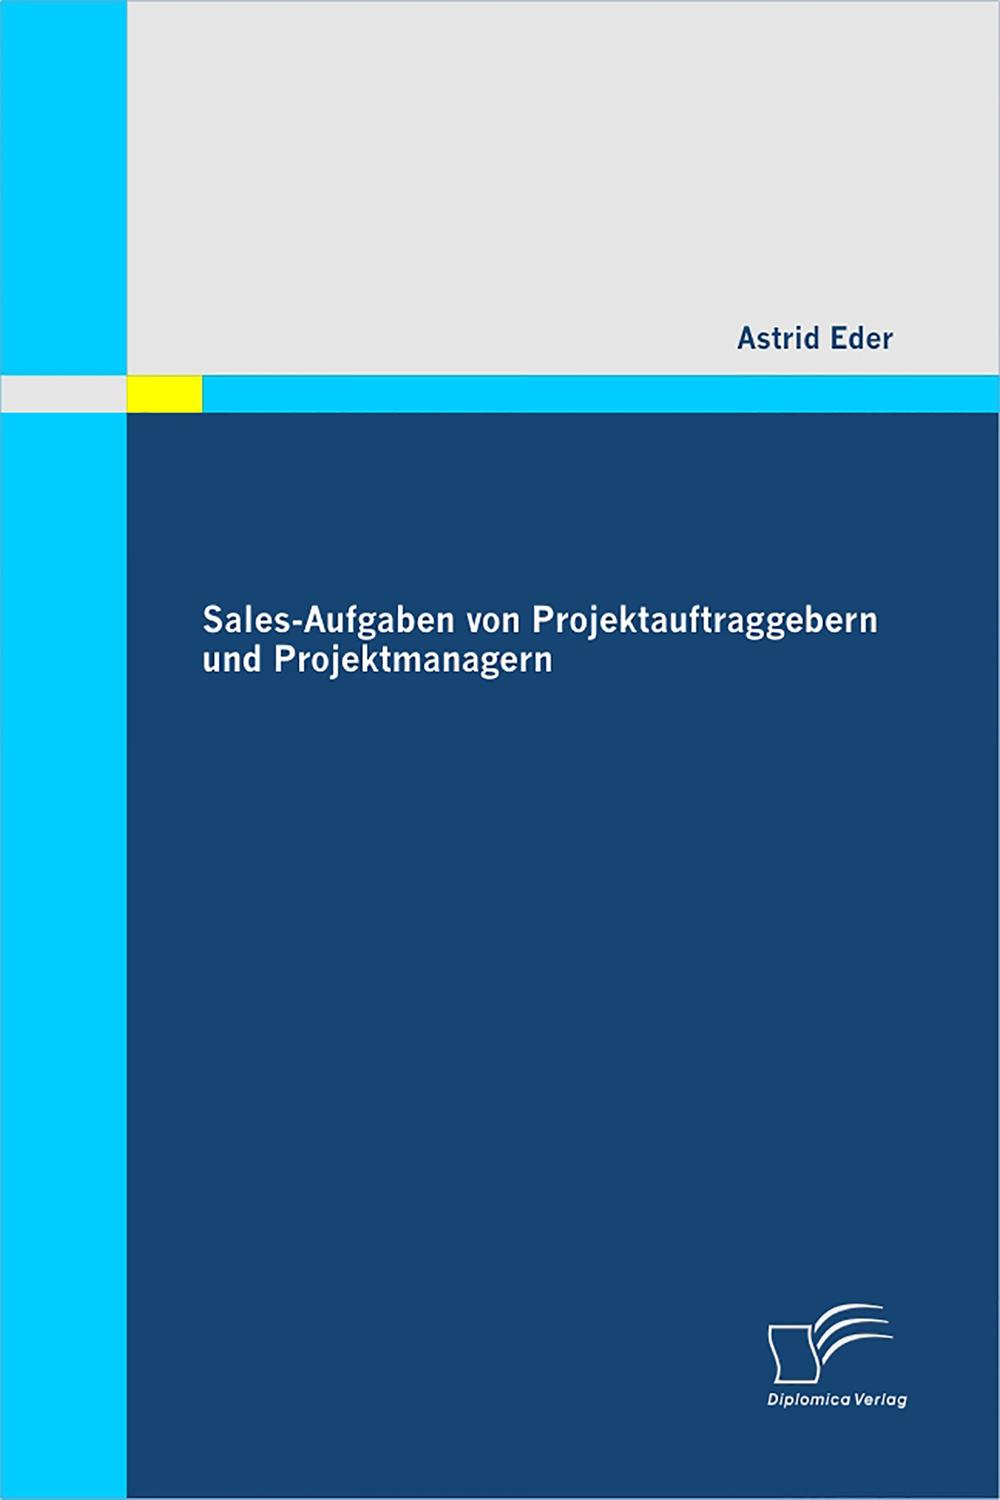 Sales-Aufgaben von Projektauftraggebern und Projektmanagern - Astrid Eder